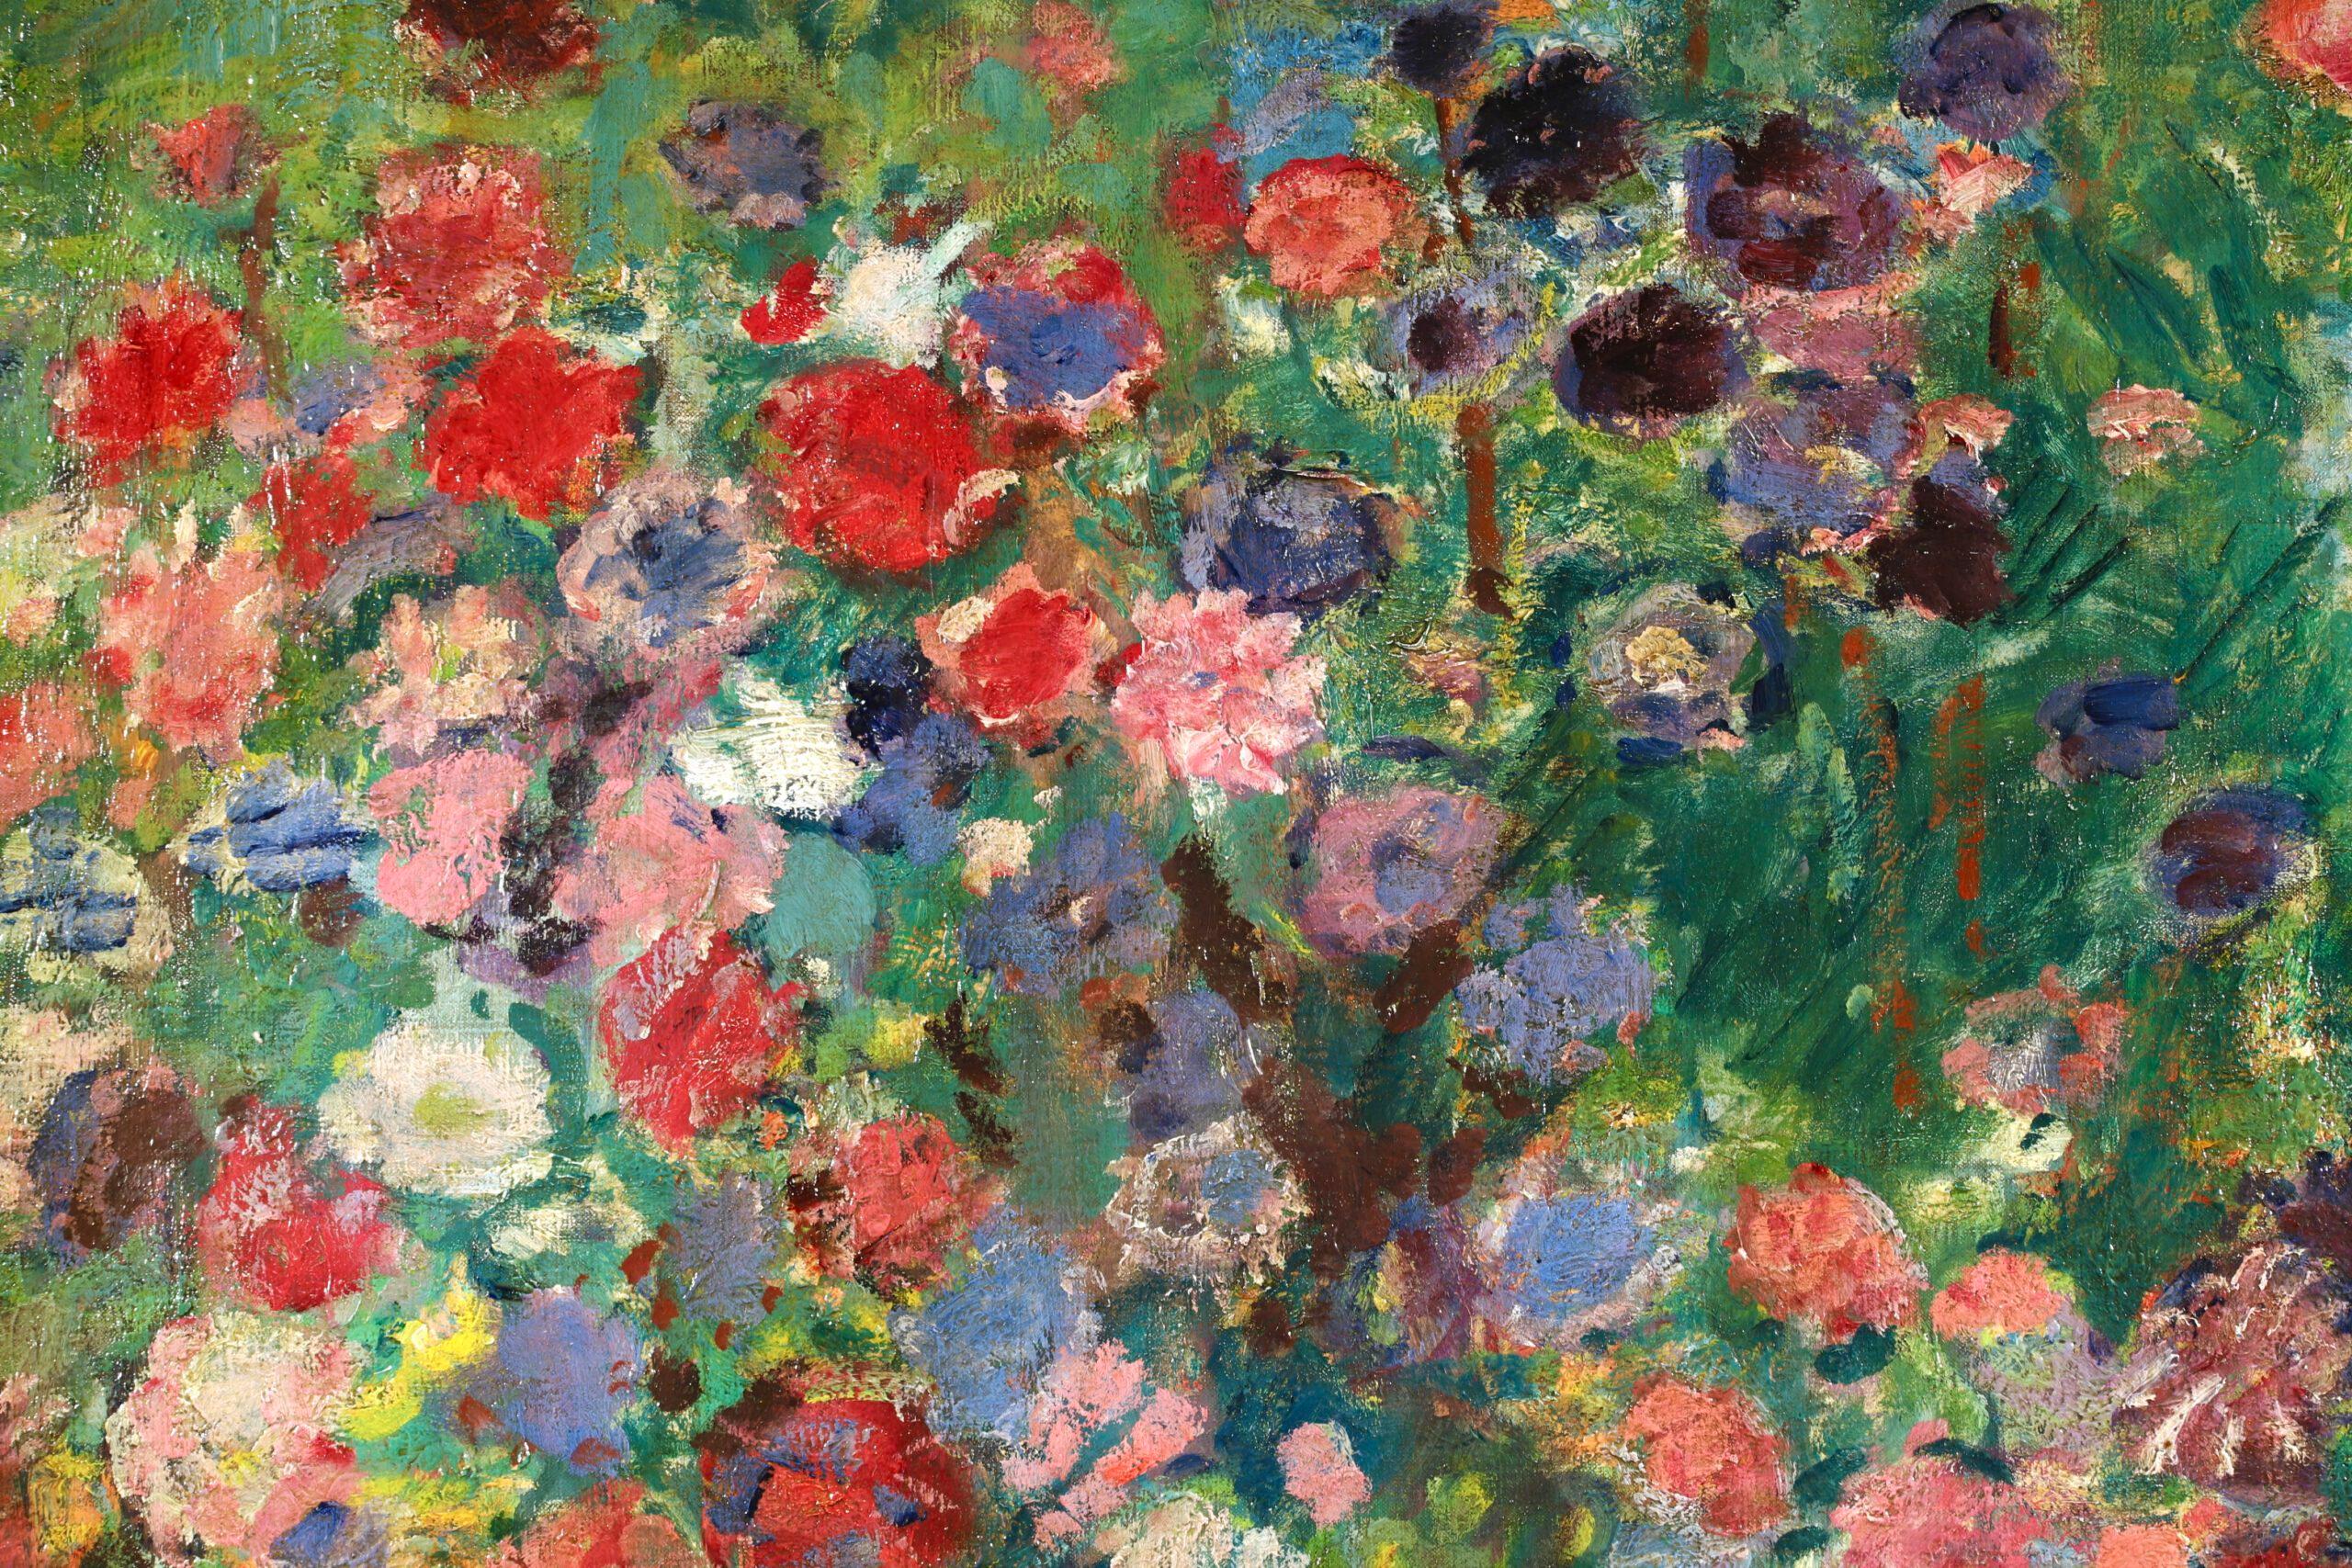 Superbe huile sur toile signée, datant de 1920, du peintre post impressionniste français Georges D'Espagnat. Cette pièce de bonne taille représente un jardin rempli de fleurs bleues, rouges, roses et violettes. 

Signature :
Signé en bas à